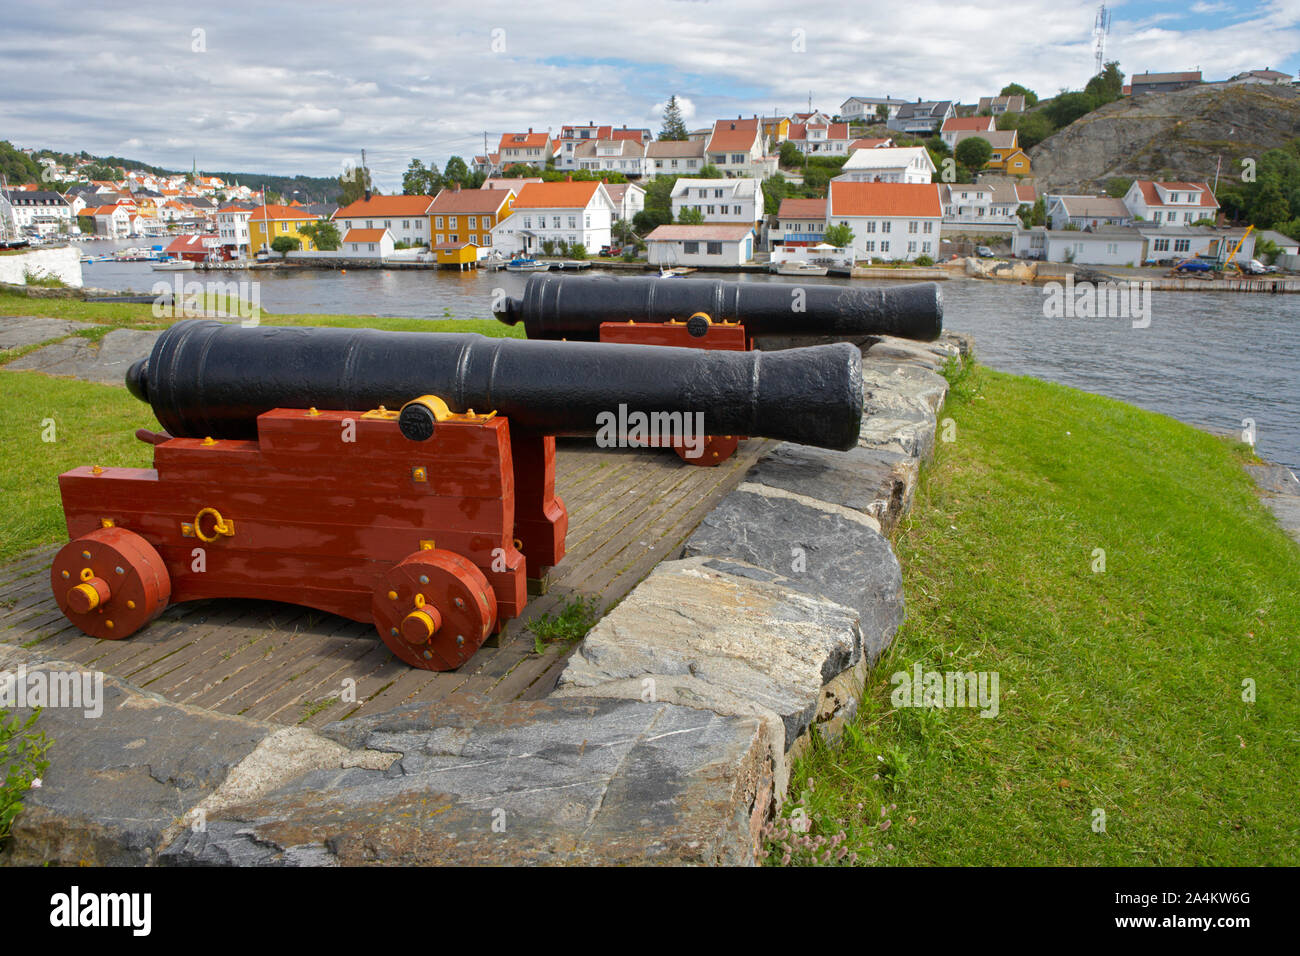 Cannons near Kragerø in Sørlandet. Stock Photo